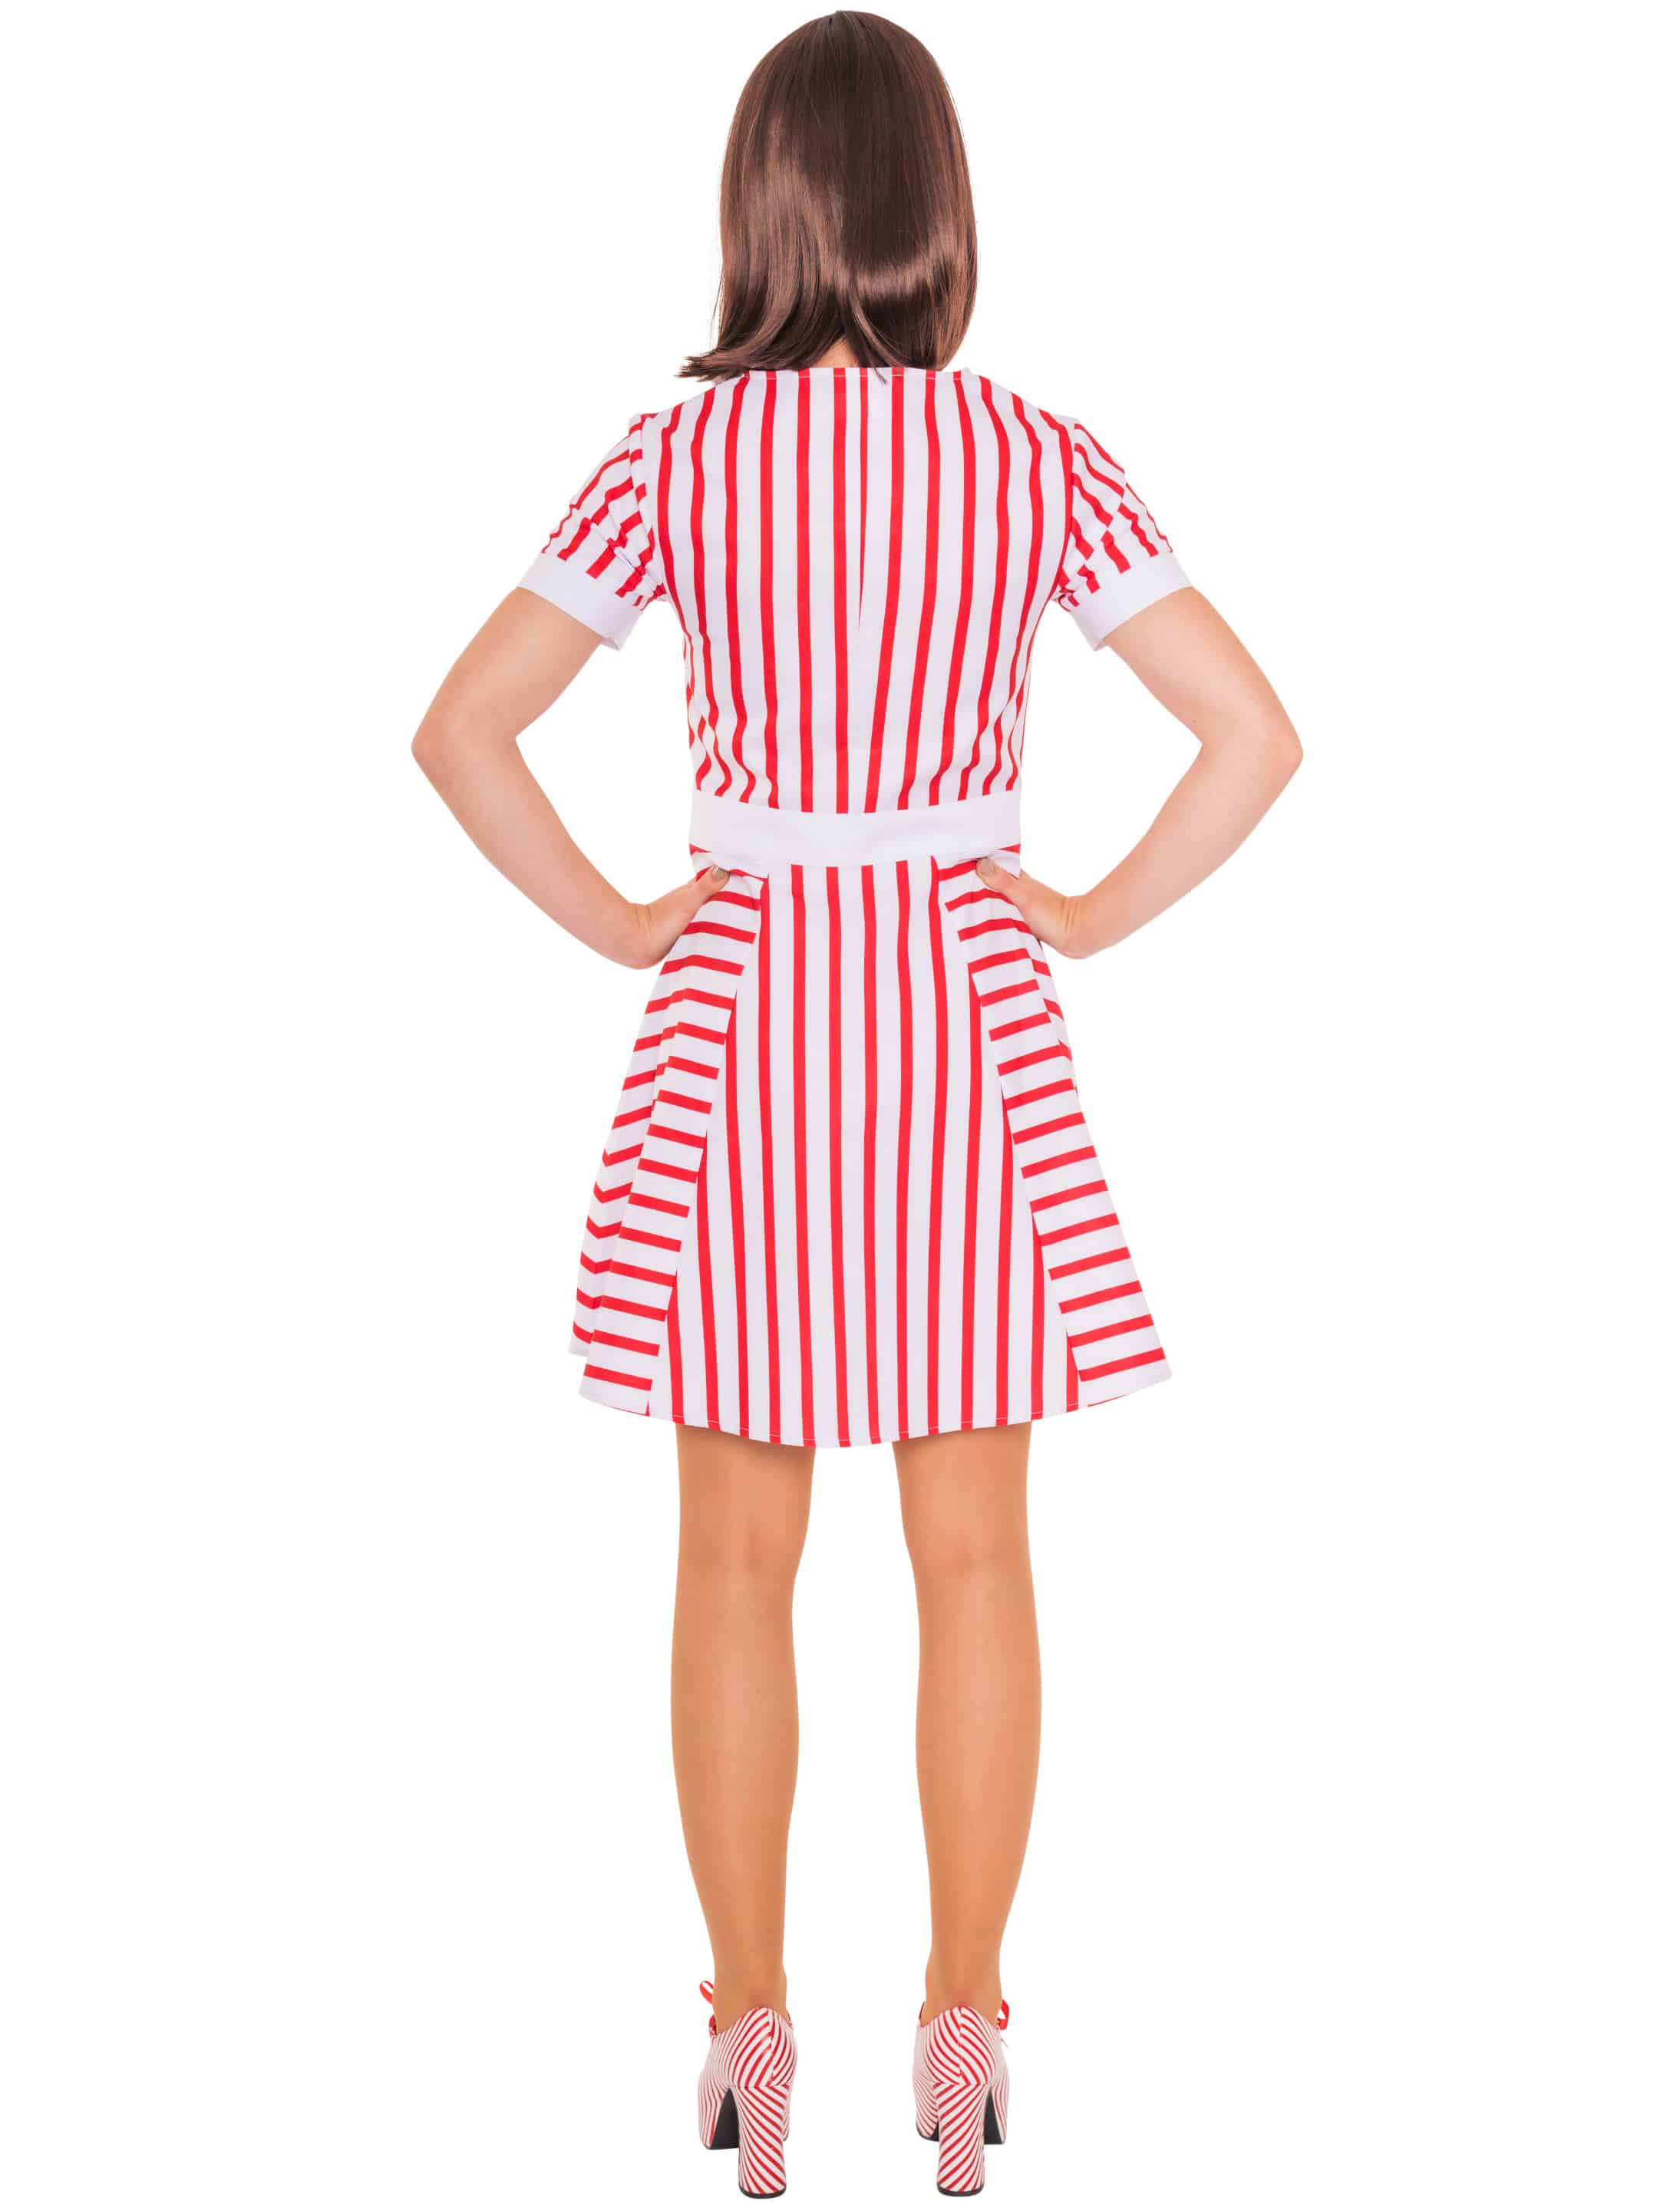 Kleid gestreift mit Kragen und Schürze rot/weiß M